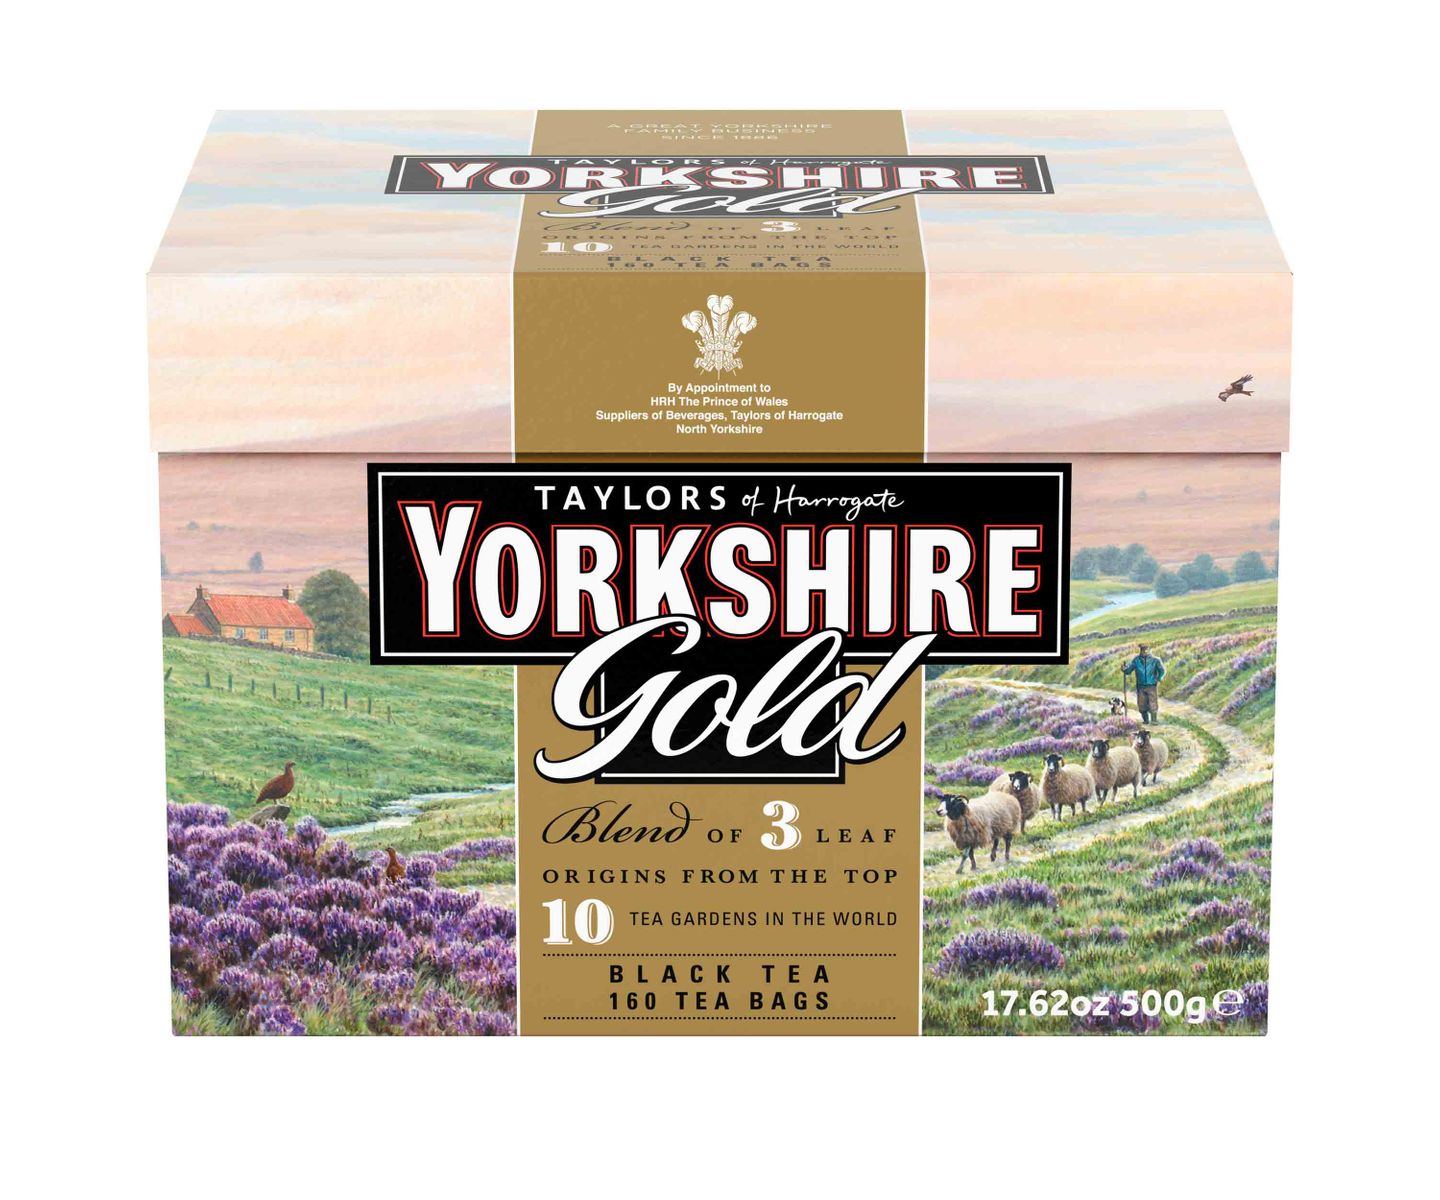 RDY 送料無料 Taylors of Harrogate ヨークシャー ゴールドティー ティーバッグ 160個入り 楽天海外通販 Taylors of Harrogate Yorkshire Gold Black Tea, Tea Bags, 160 Ct